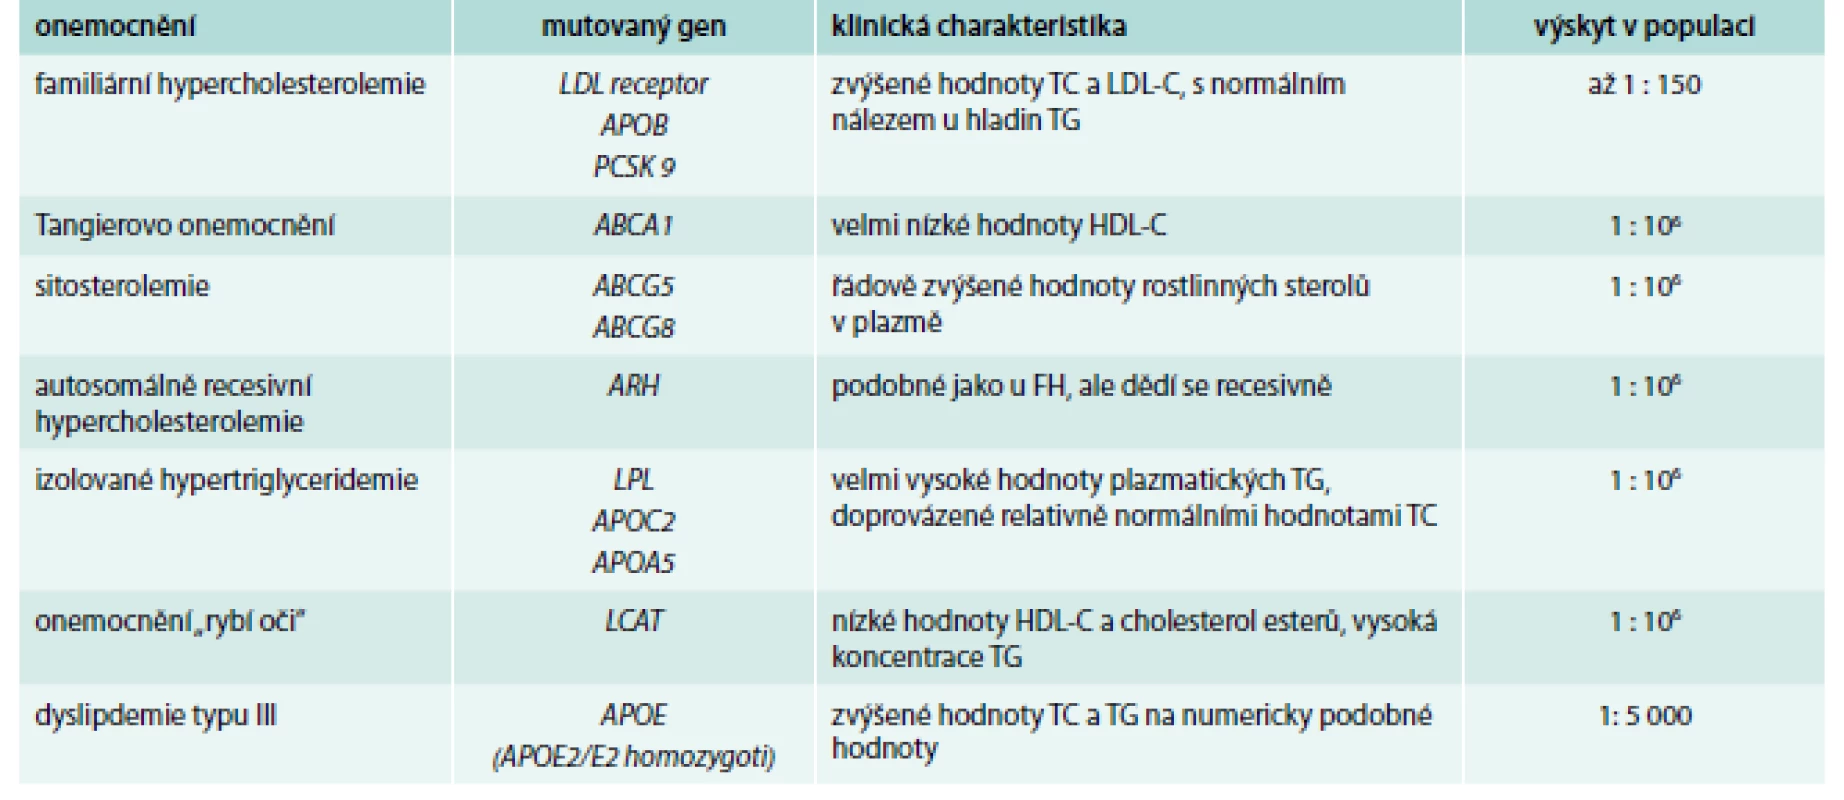 Příklady monogenních poruch metabolizmu lipidů